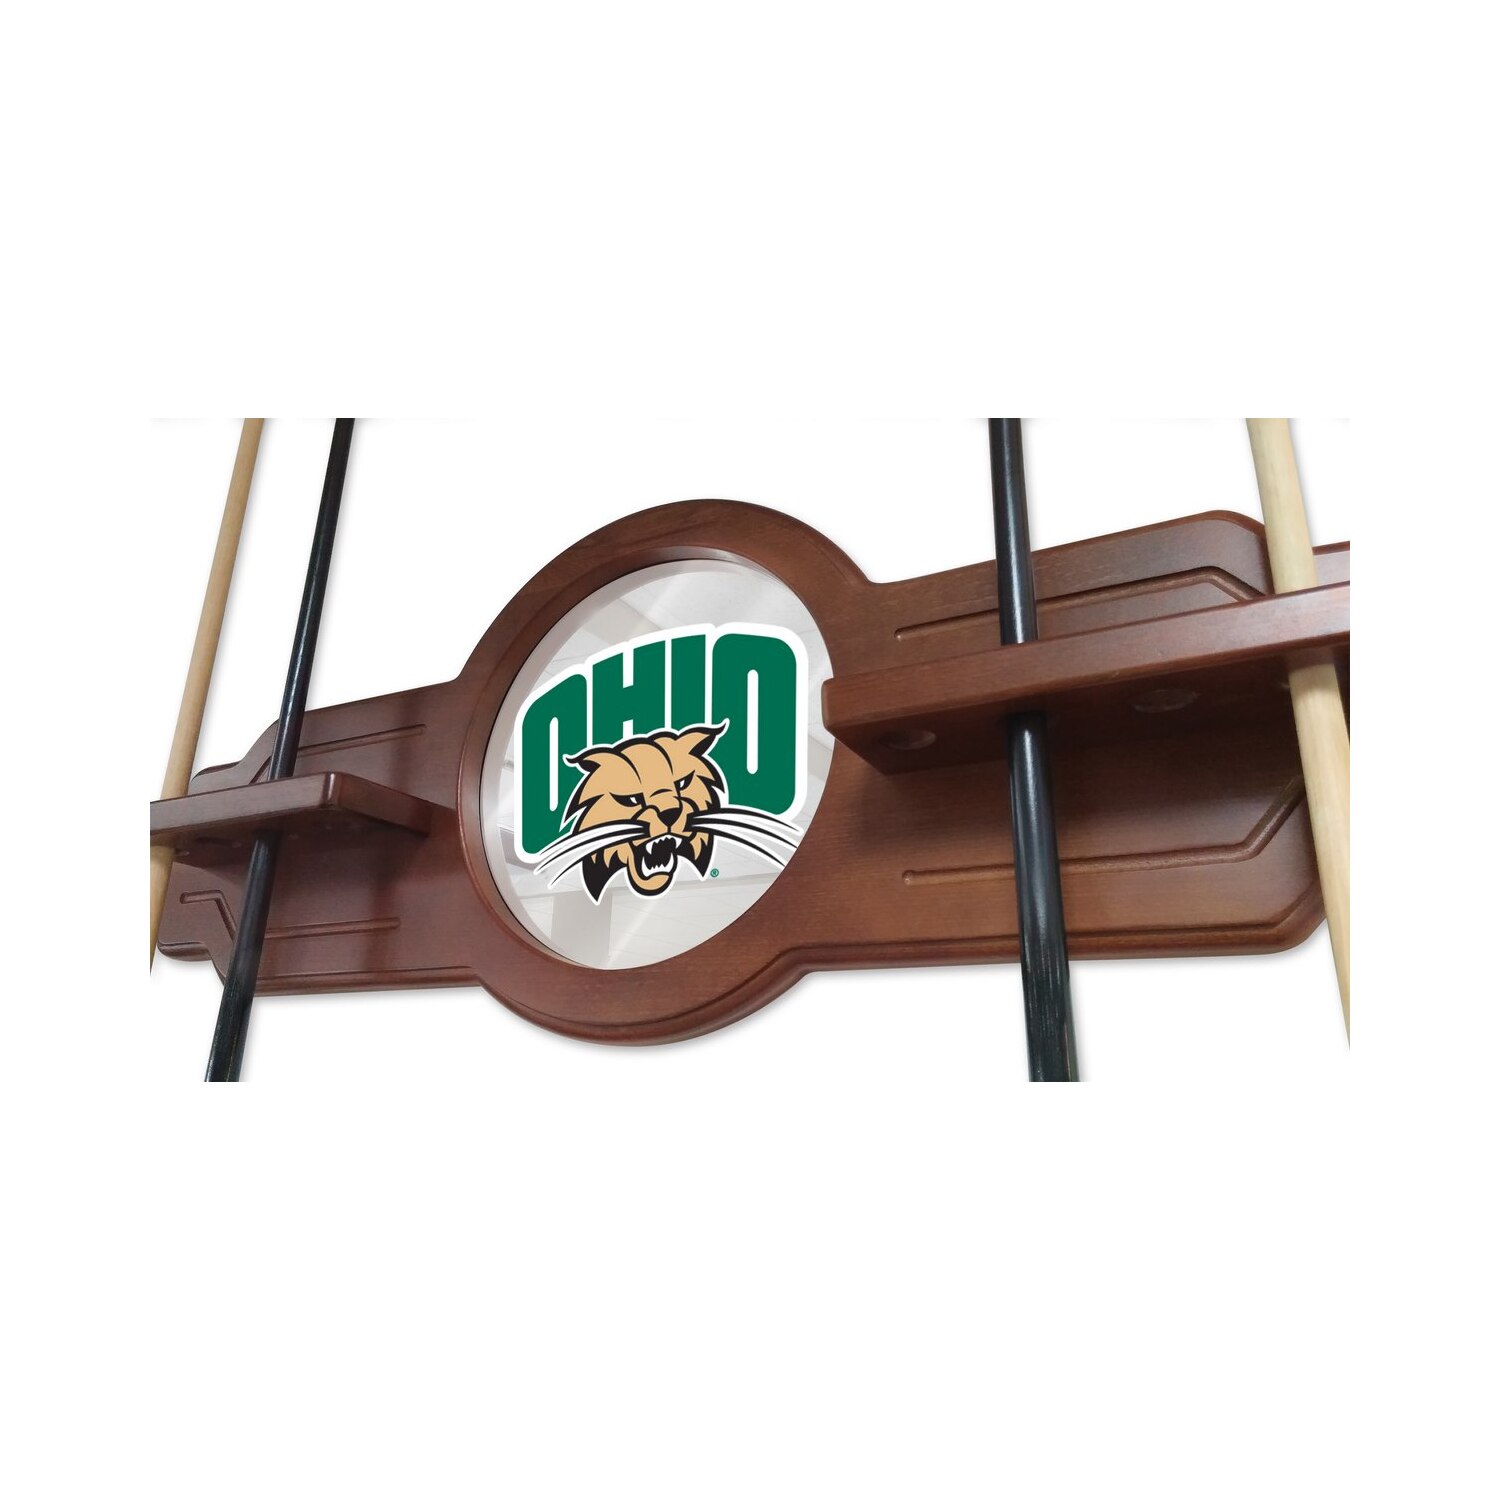 Ohio University Solid Wood Cue Rack with a English Tudor Finish - image 3 of 3